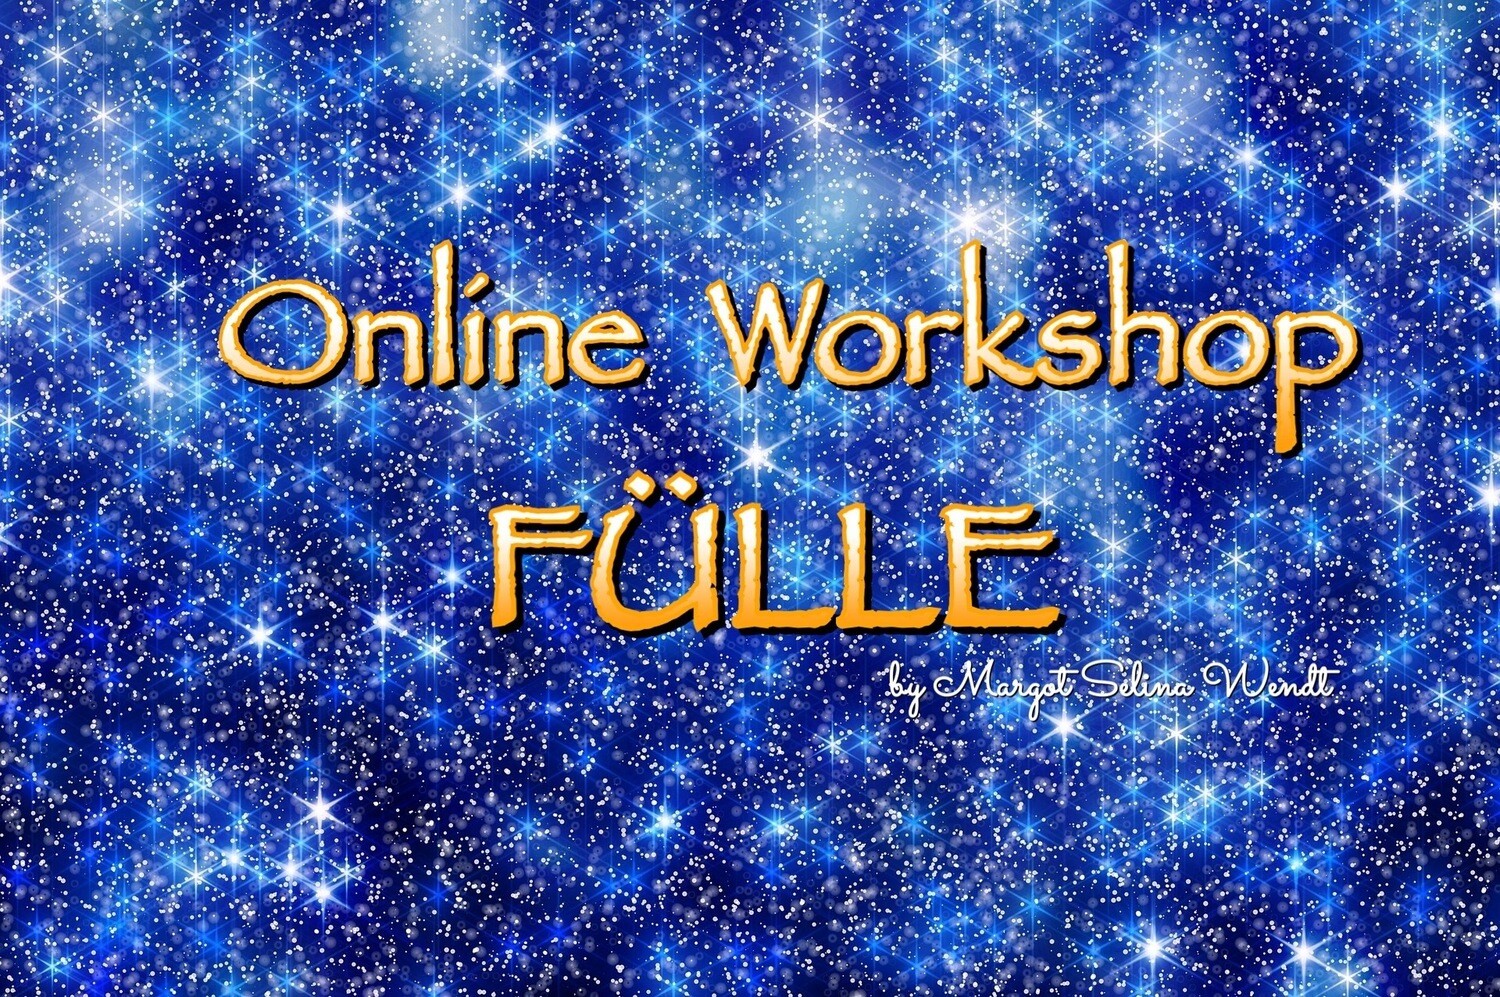 FÜLLE Workshop